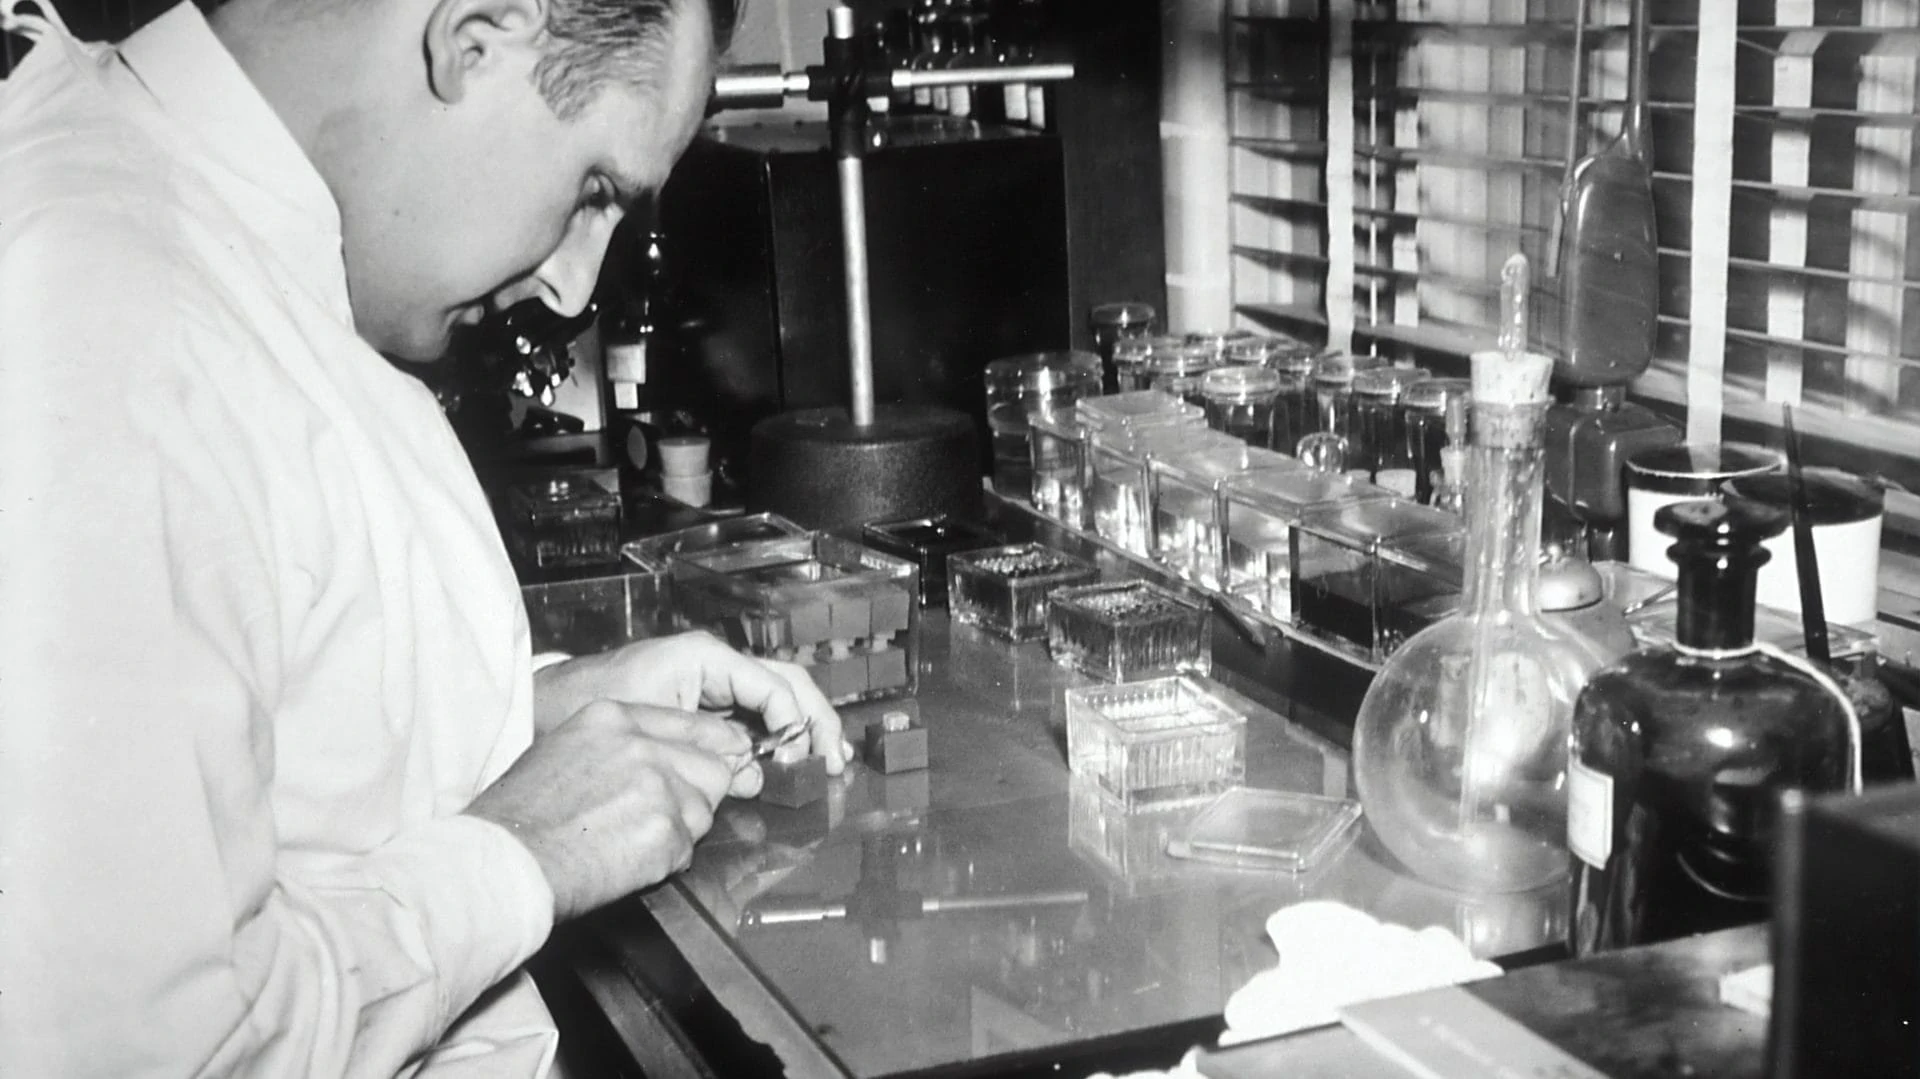 Man in laboratorium, zwart wit foto